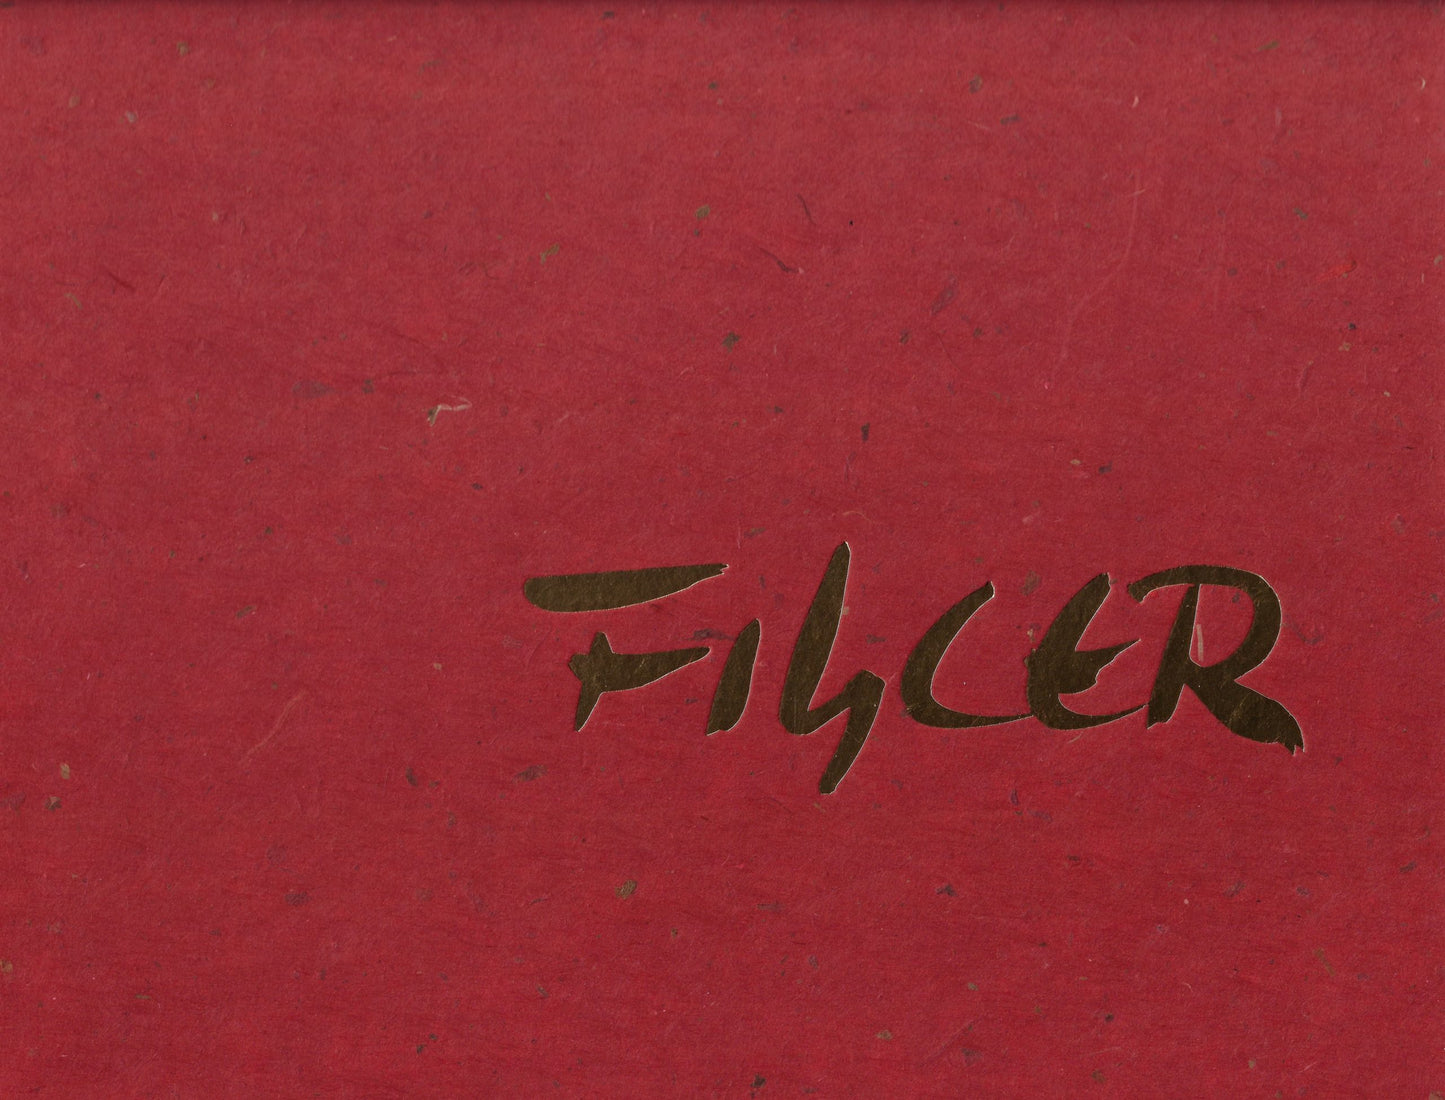 Luis Filcer (genummerd 32/125 met 26 gesigneerde zeefdrukken)